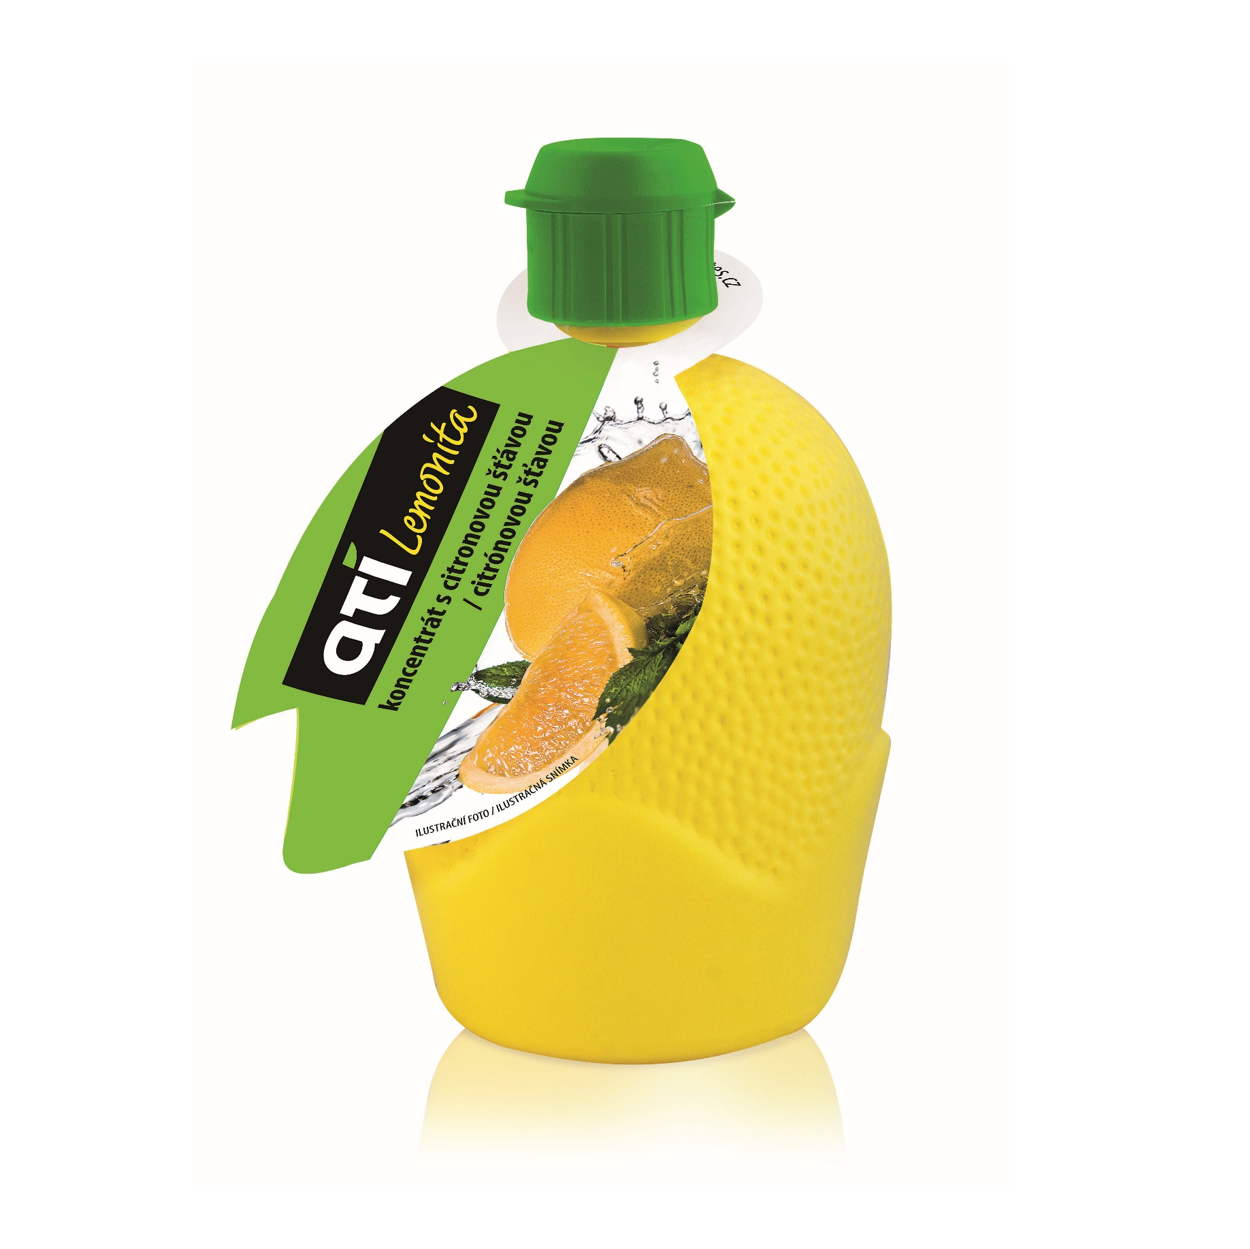 ATI Lemonita citronový koncentrát 